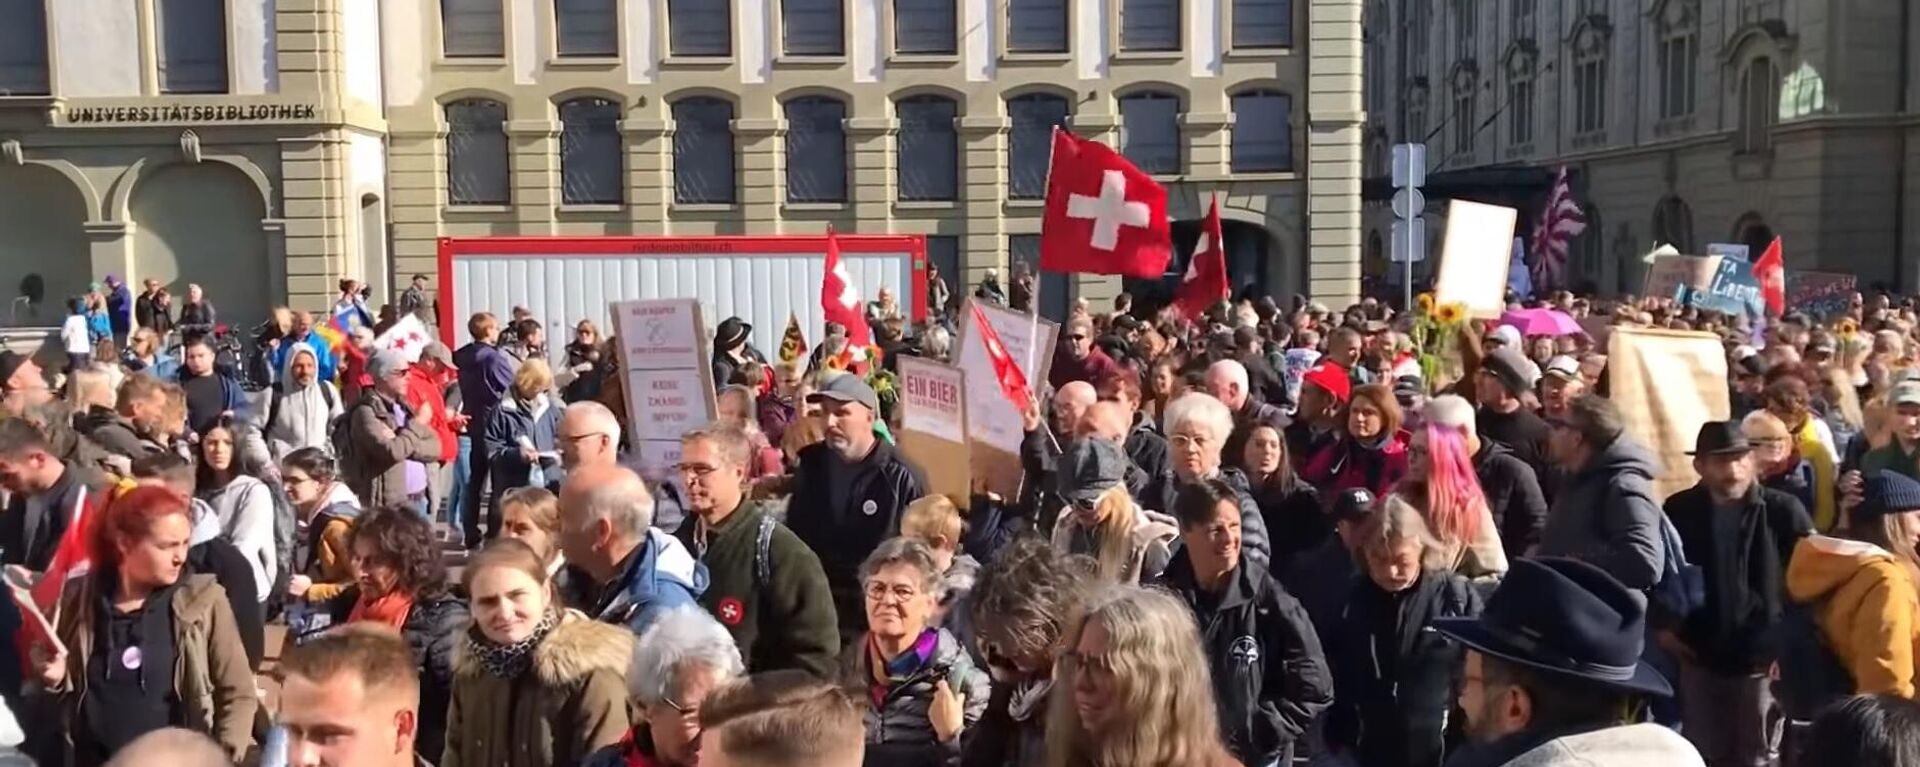 Protest u Bernu u Švajcarskoj protiv kovid propusnica - Sputnik Srbija, 1920, 24.10.2021